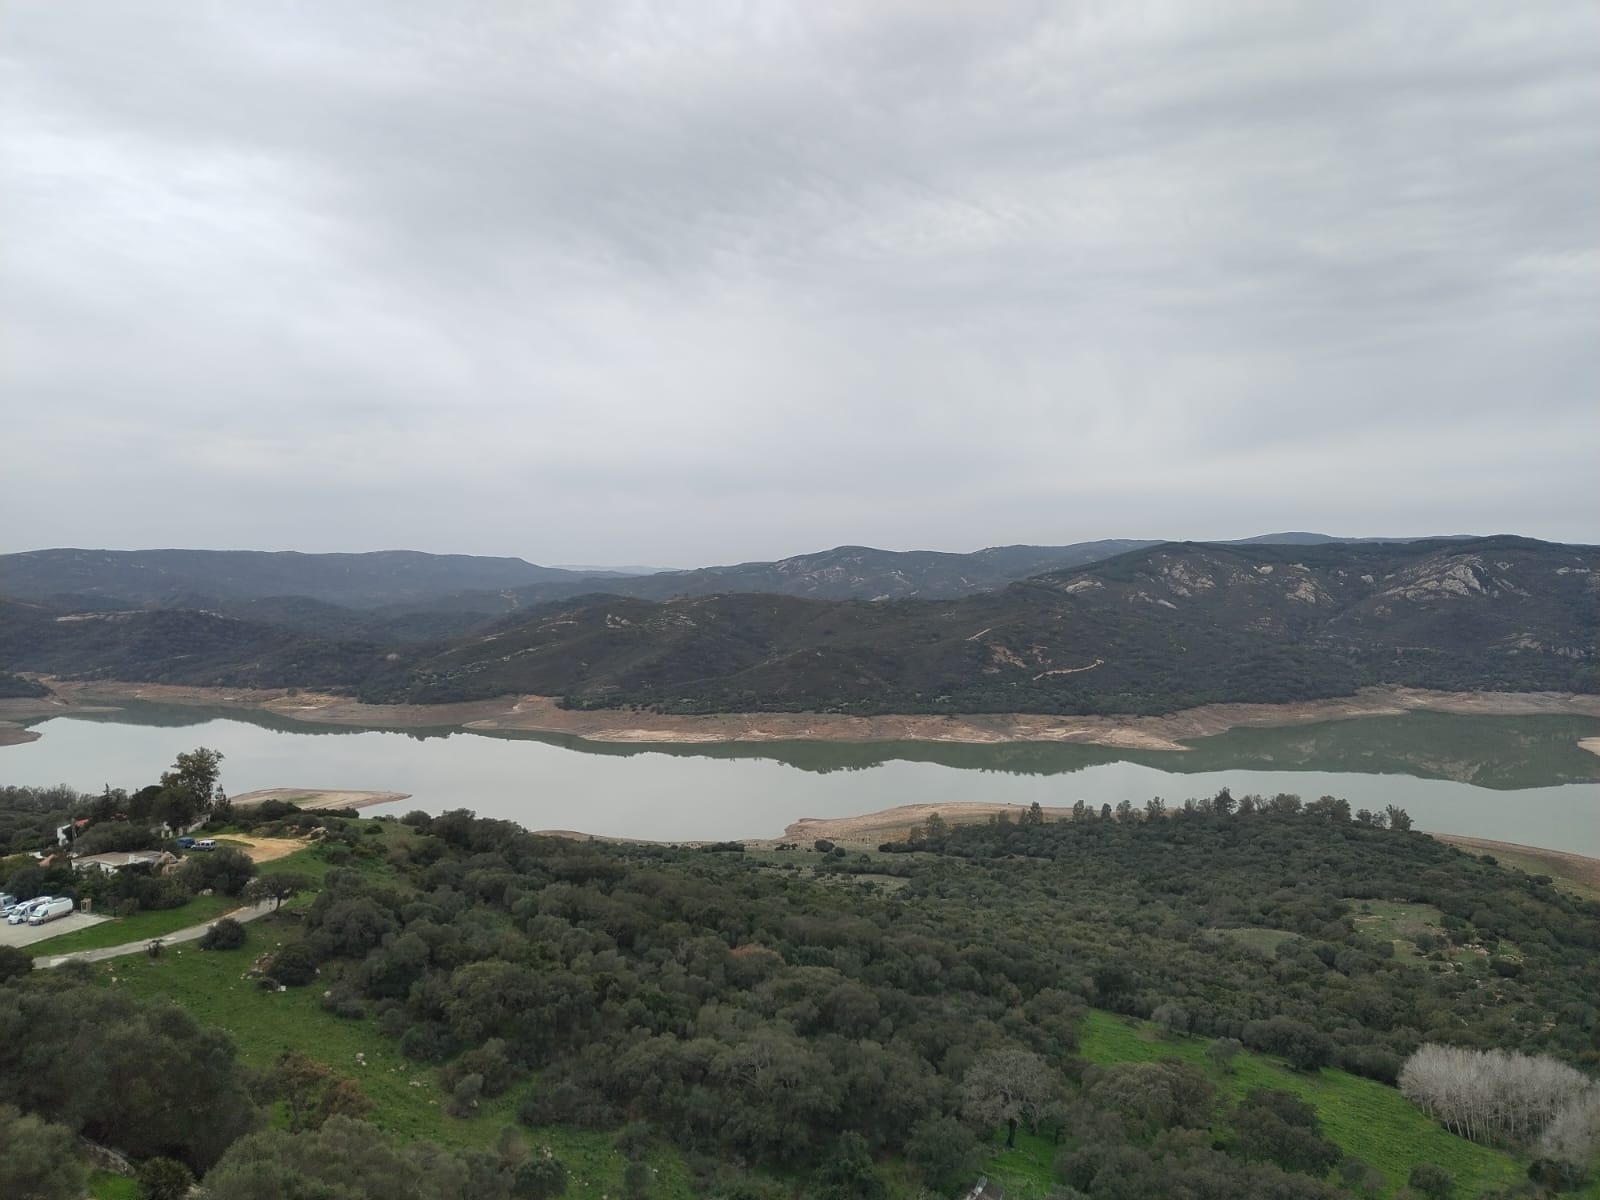 Pantano de Guadarranque. El comité de sequía anuncia la limitación a 160 litros de agua diarios por habitante en la comarca.